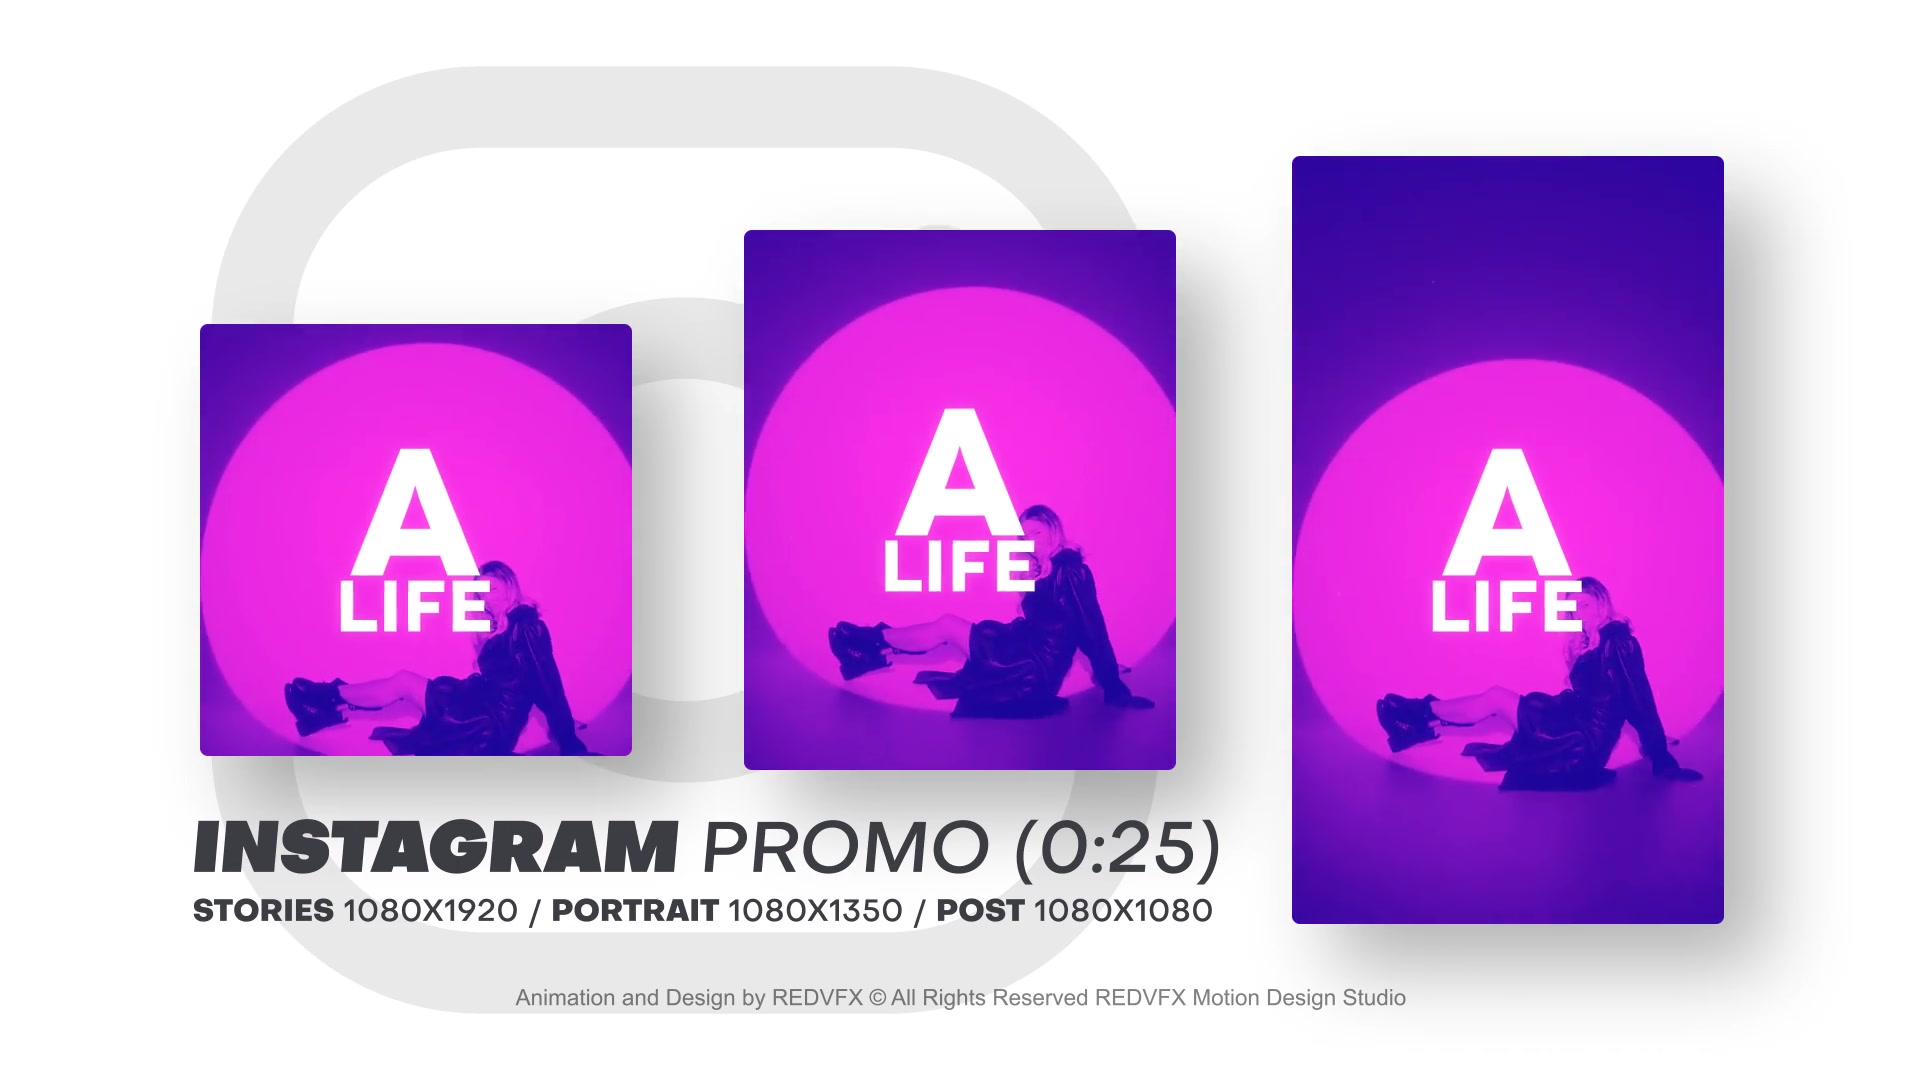 Instagram Promo for Premiere Pro Videohive 36478083 Premiere Pro Image 8